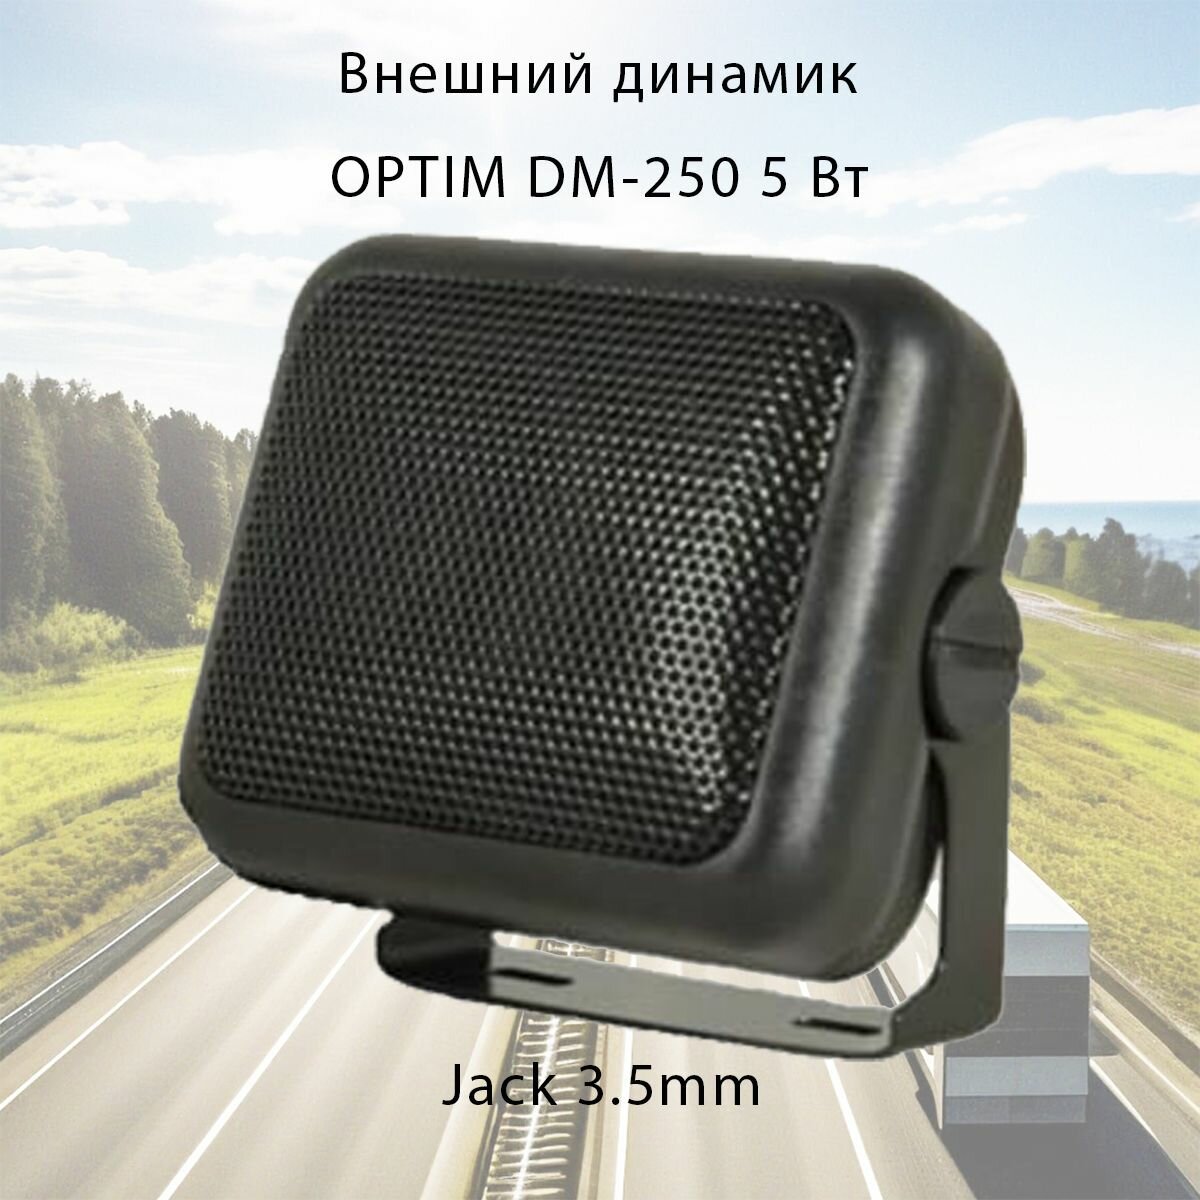 Внешний динамик для рации OPTIM DM-250 5 Вт